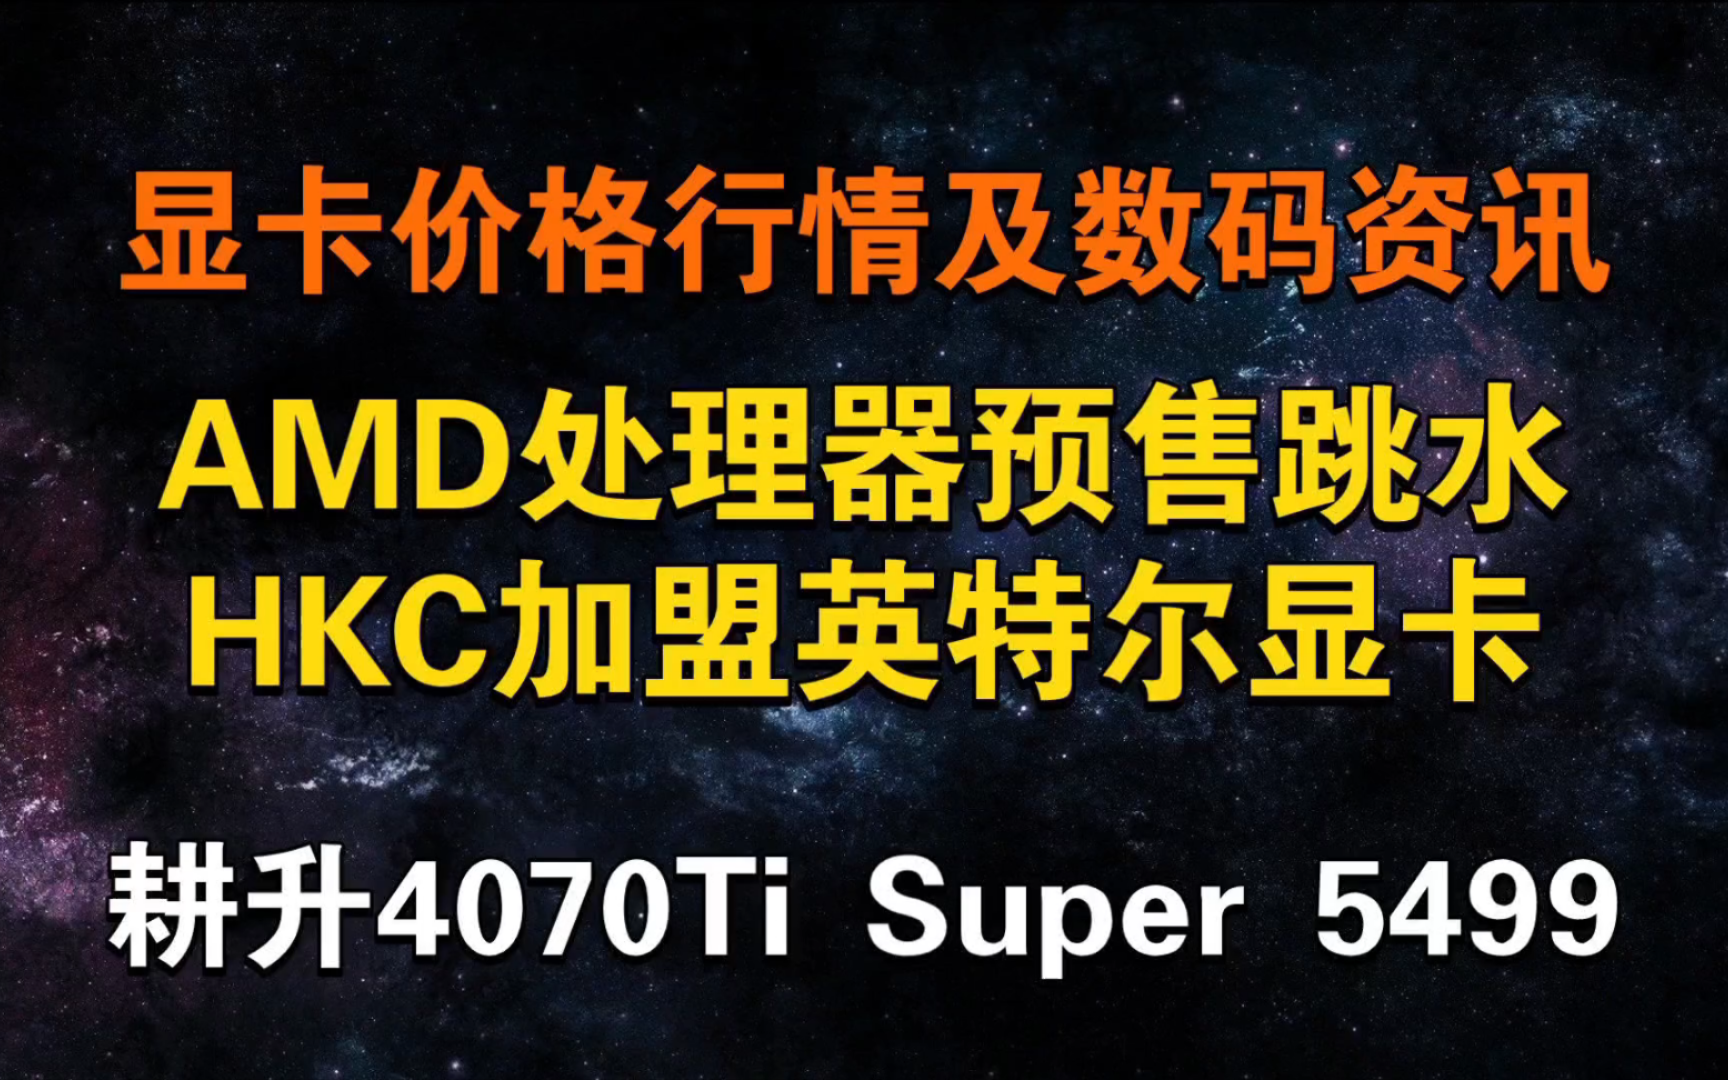 AMD处理器预售跳水 国内大厂HKC加盟英特尔显卡!耕升4070Ti Super 5499元 今日显卡价格及数码资讯